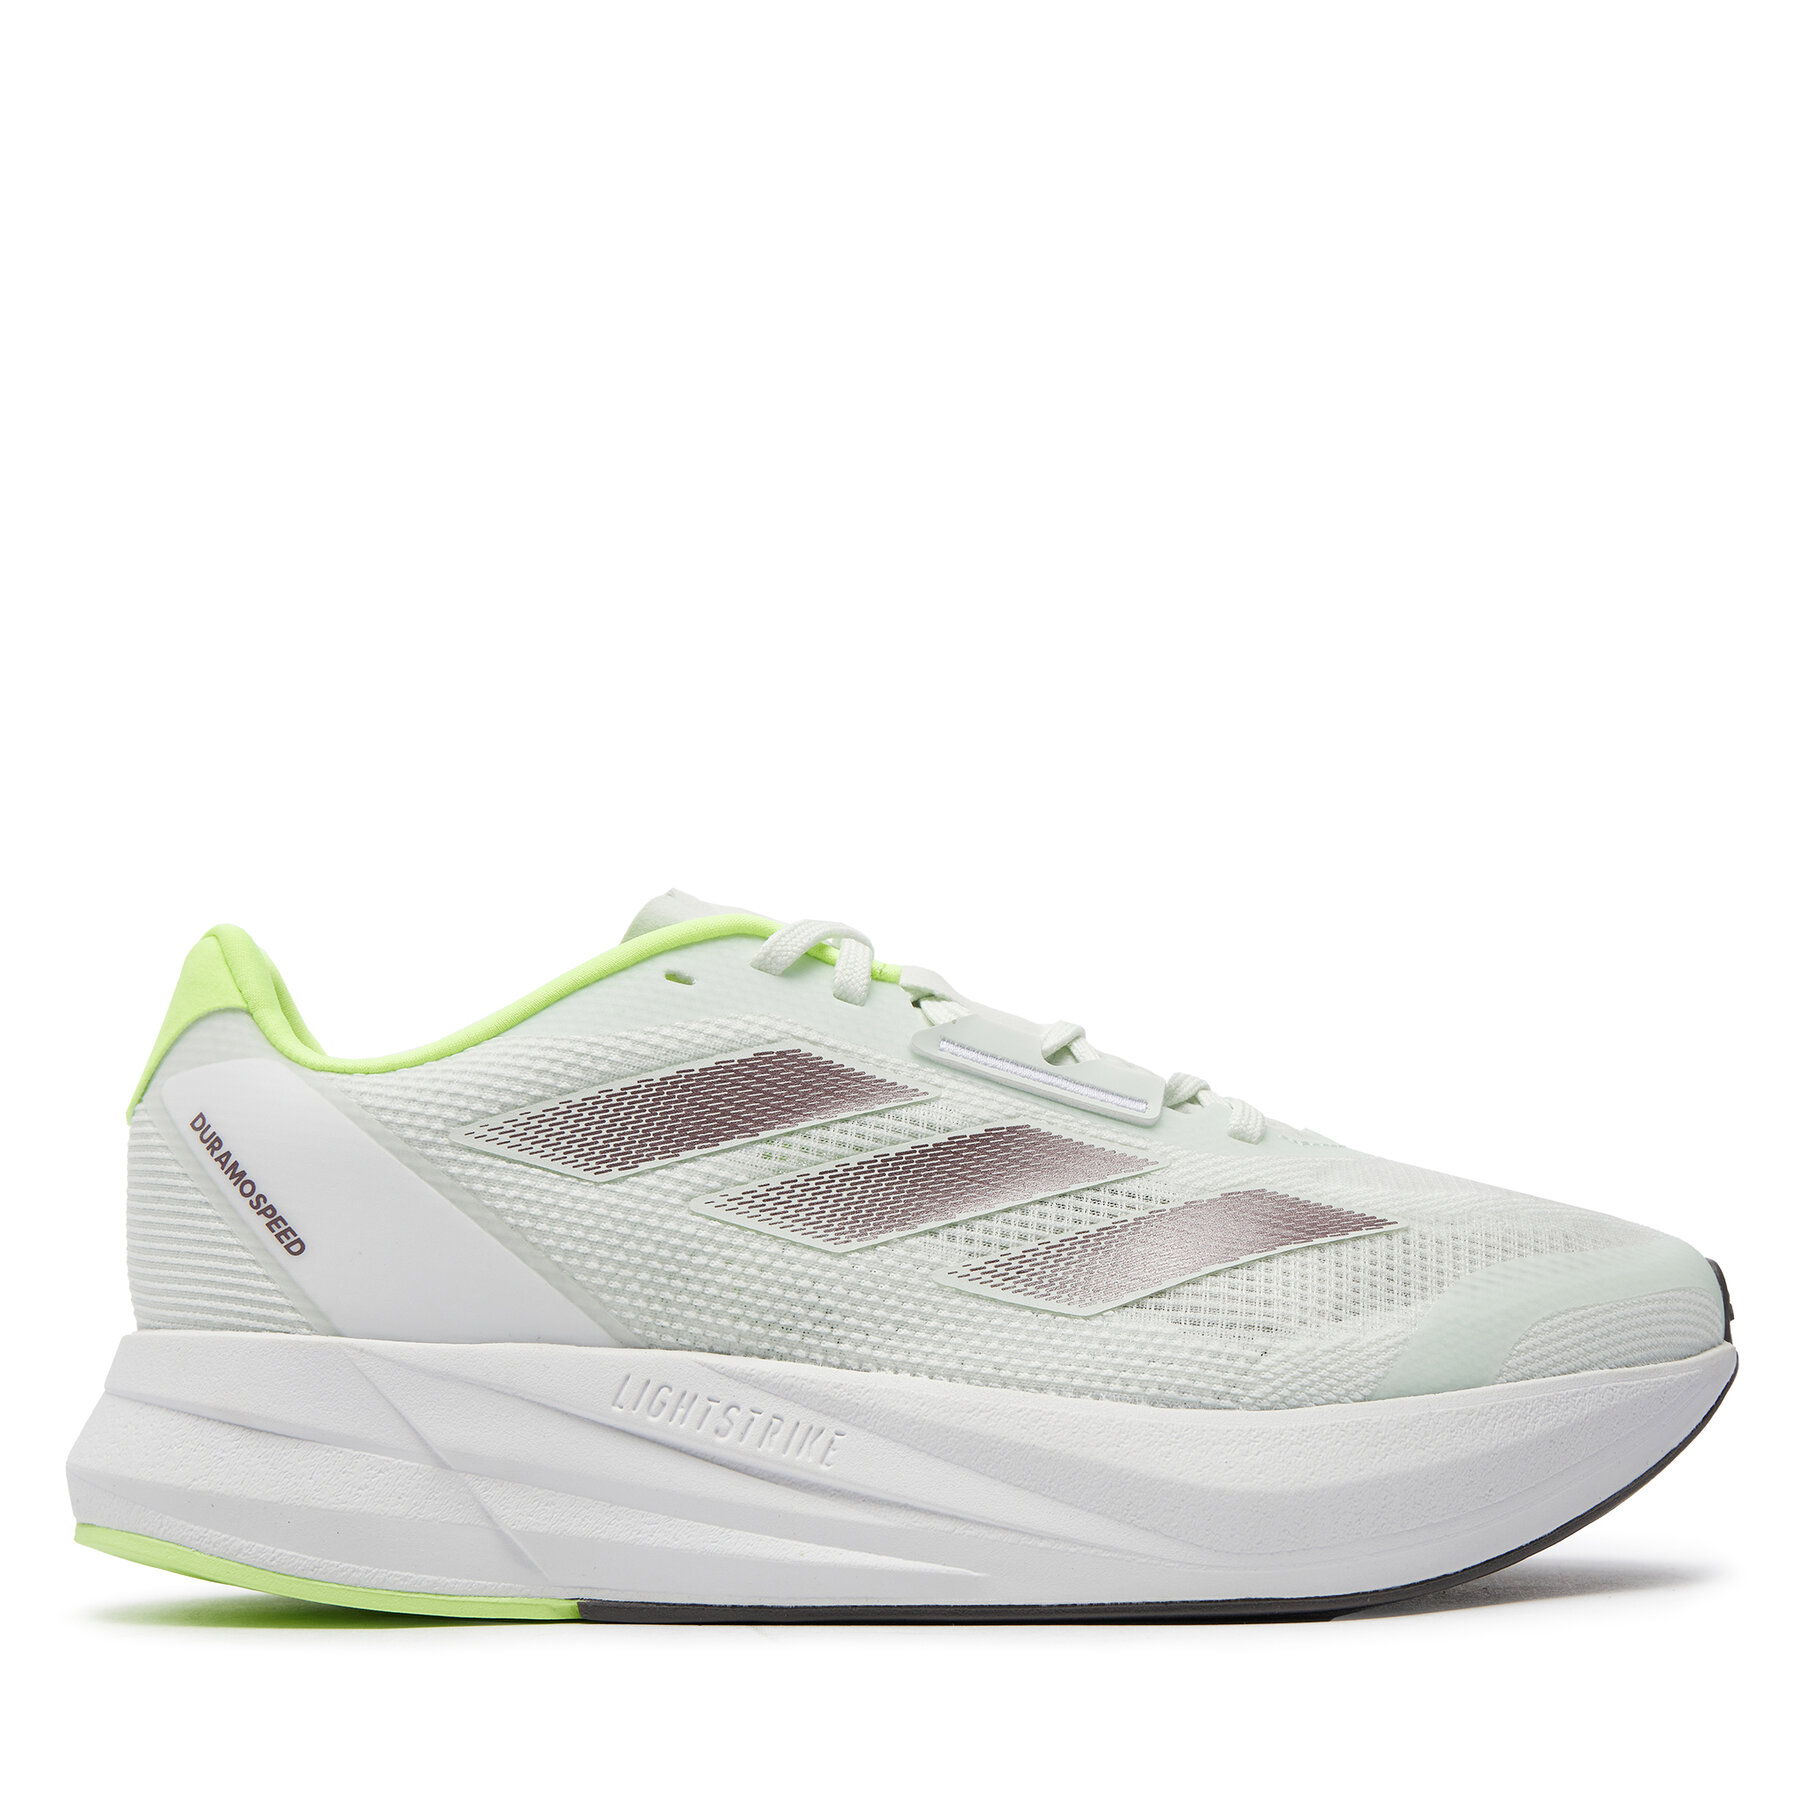 Laufschuhe adidas Duramo Speed IE5476 Grün von Adidas